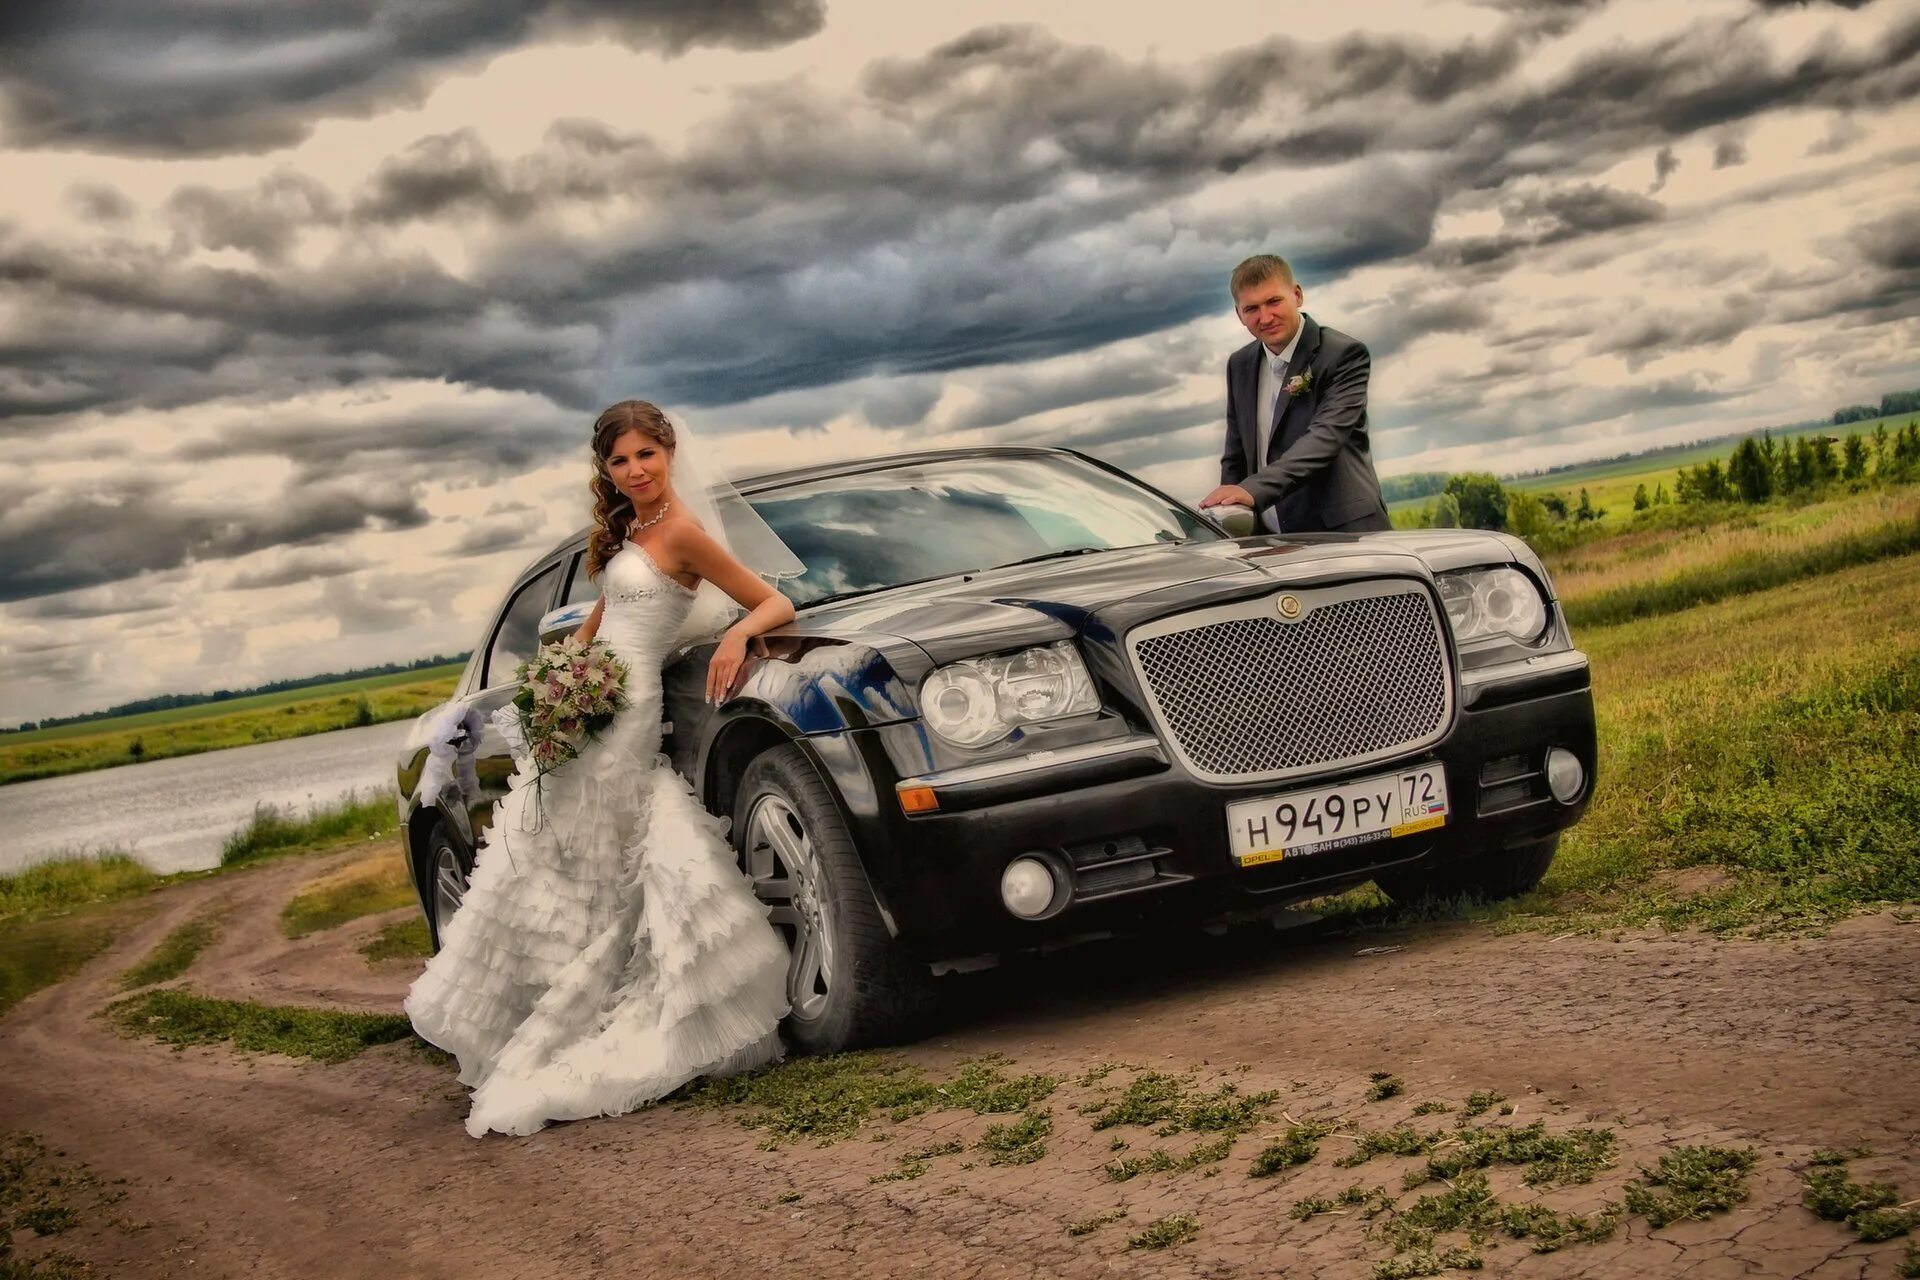 Фото на фоне машины. Свадебная фотосессия с автомобилем. Свадебная фотосессия с машиной. Невеста в машине. Невеста около машины.